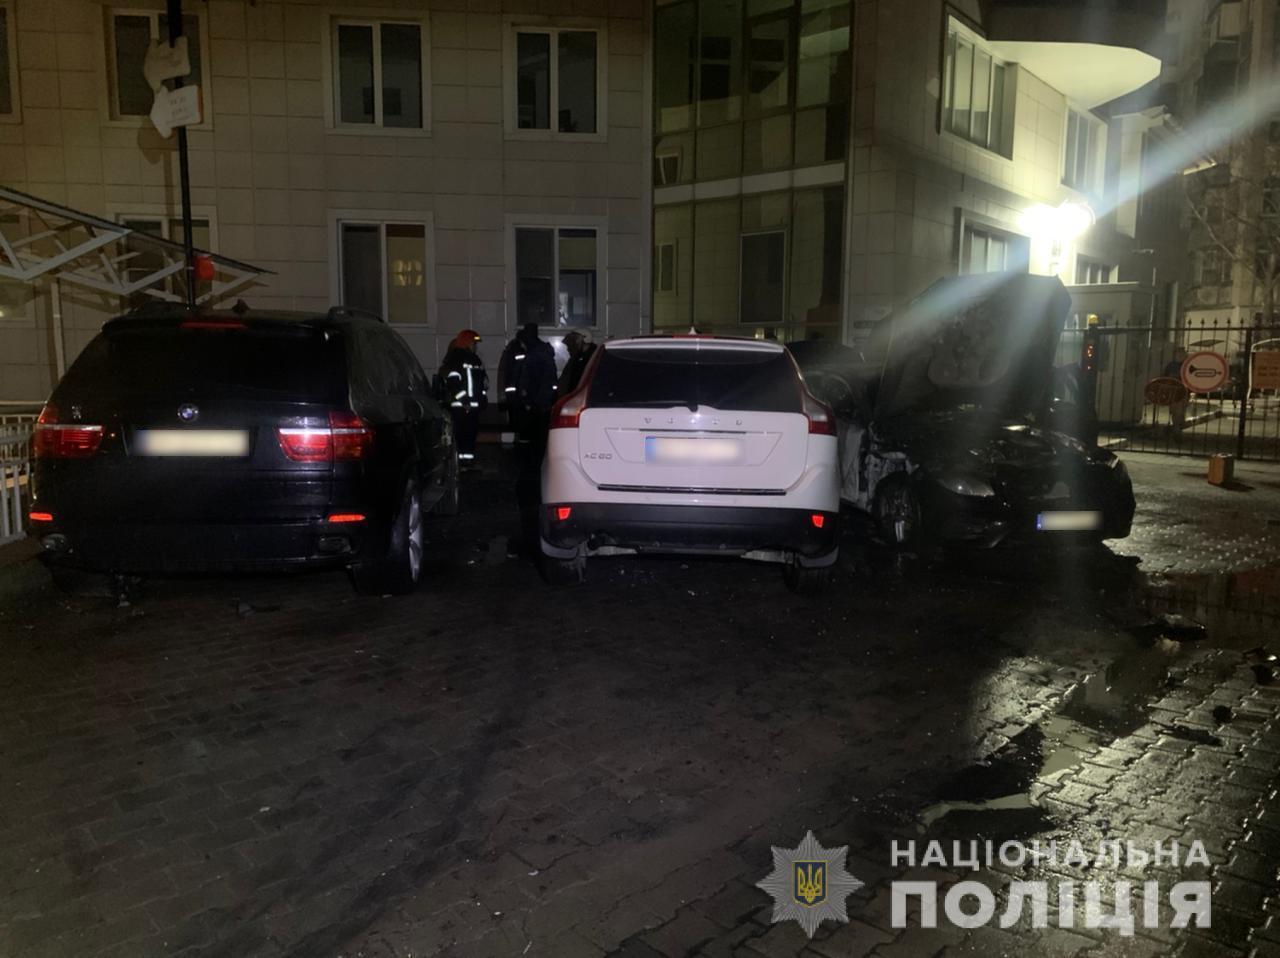 Одеські поліцейські розслідують обставини займання трьох автомобілів на вулиці Маршала Говорова